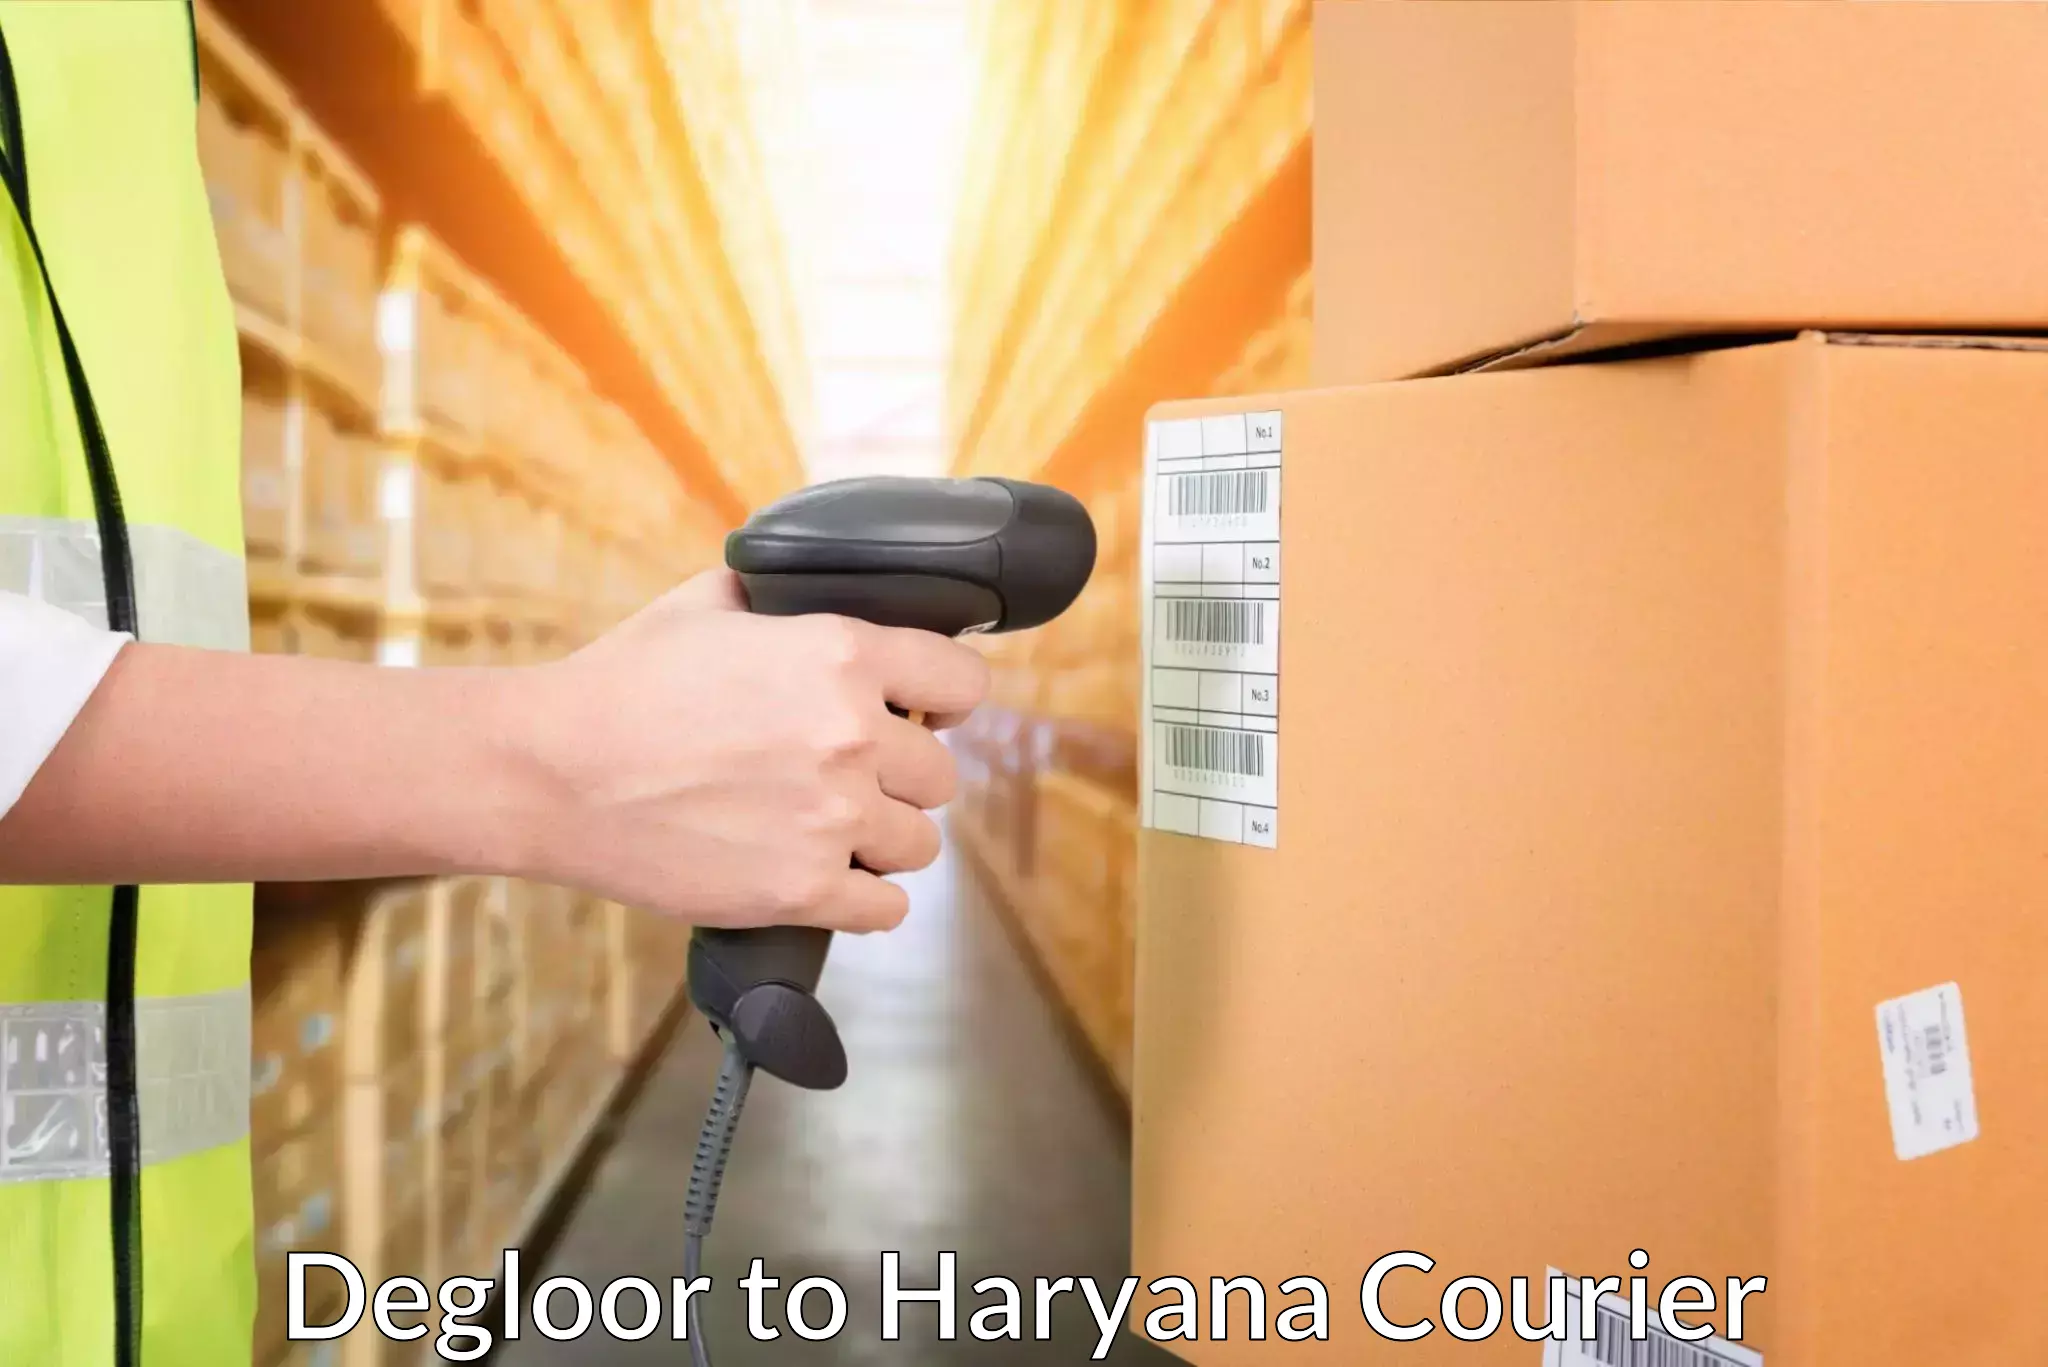 Efficient cargo handling Degloor to Haryana